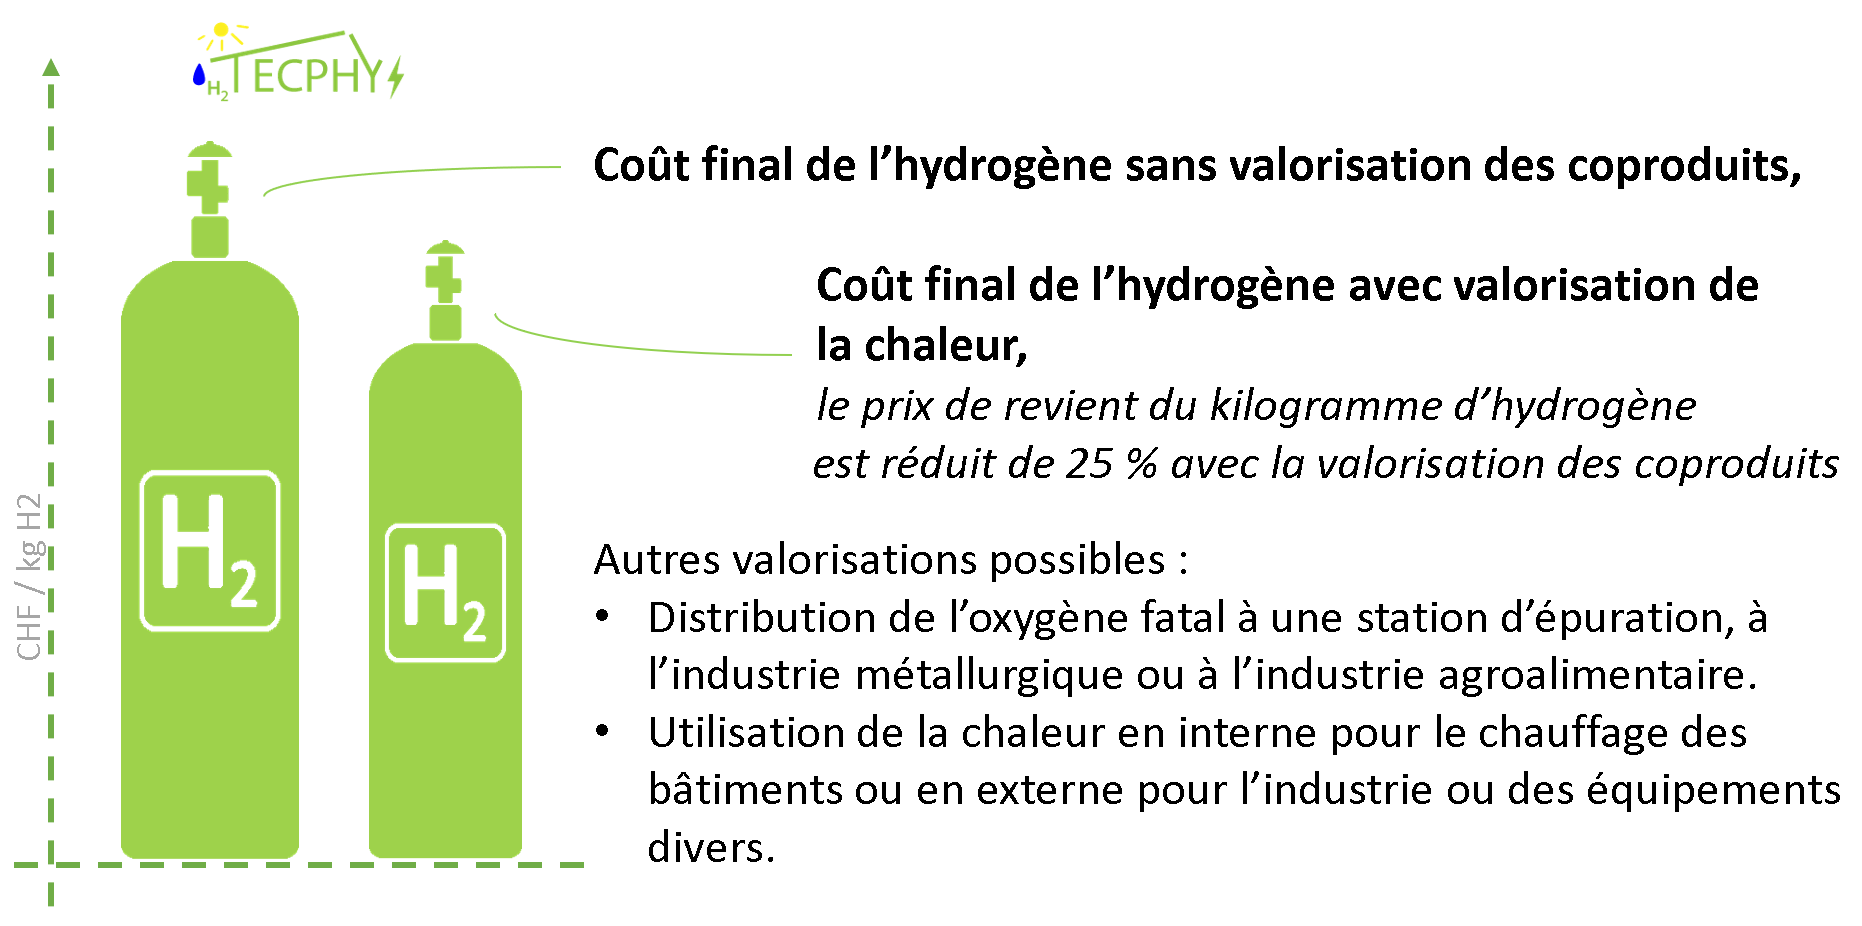 La valorisation des coproduits de l'hydrogène entraîne une baisse d'un quart du prix de revient.